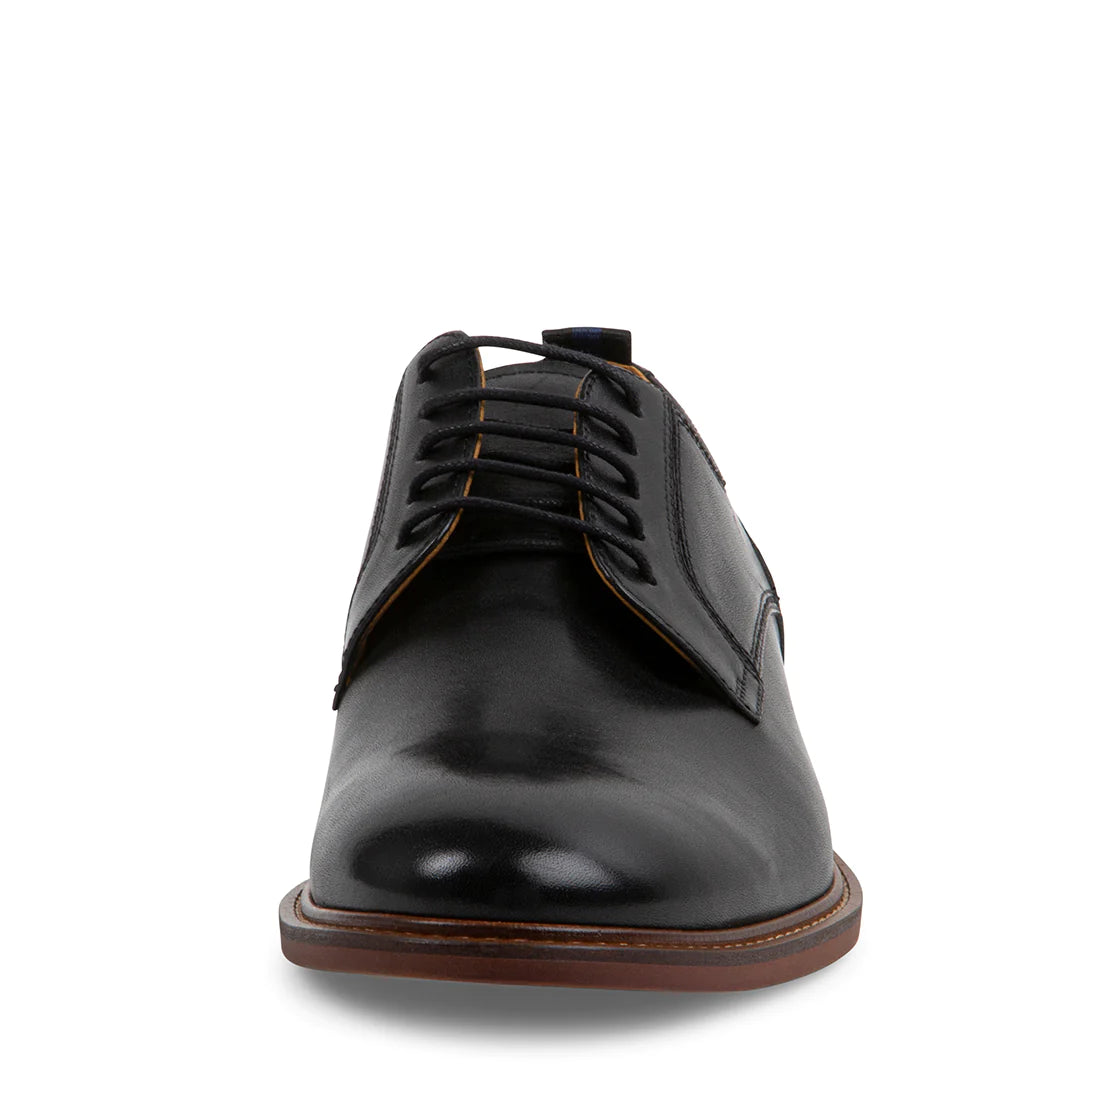 Steve Madden - Chidmore Dress Shoe in Black